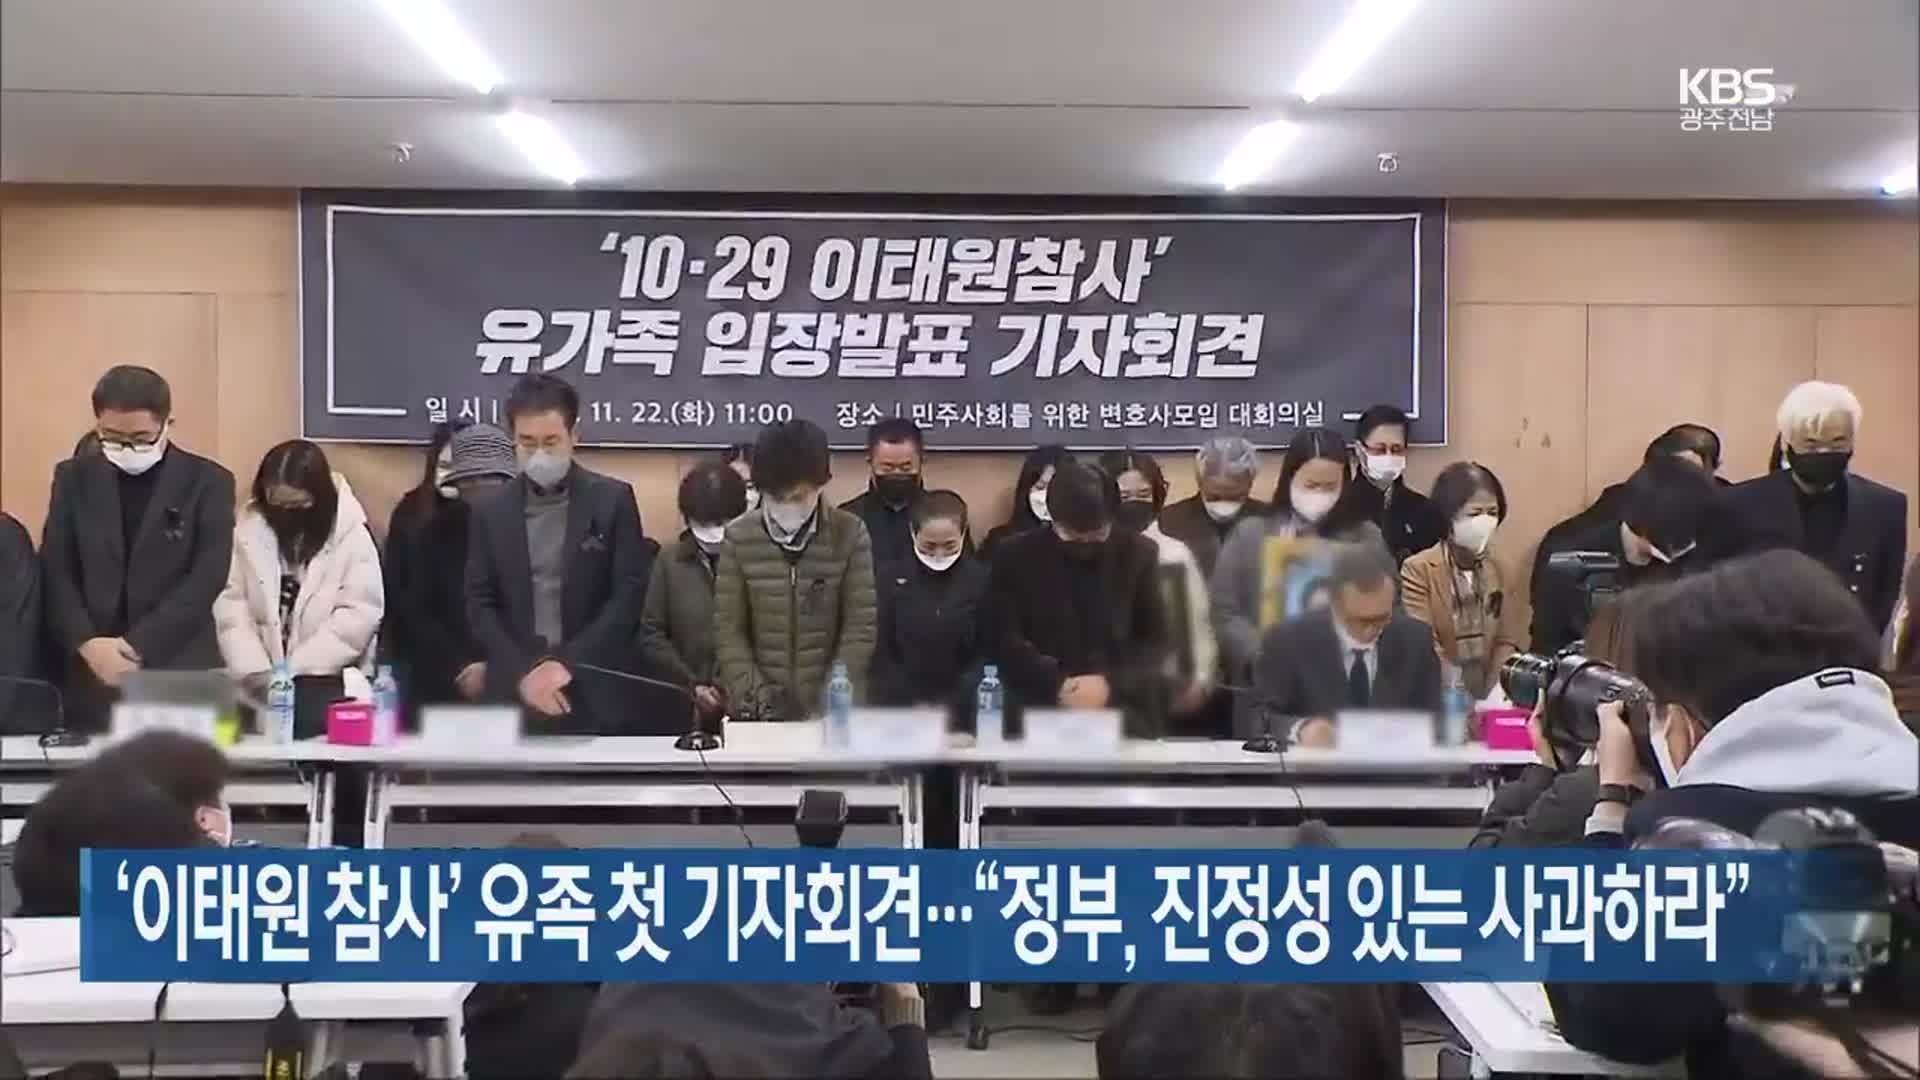 ‘이태원 참사’ 유족 첫 기자회견…“정부, 진정성 있는 사과하라”